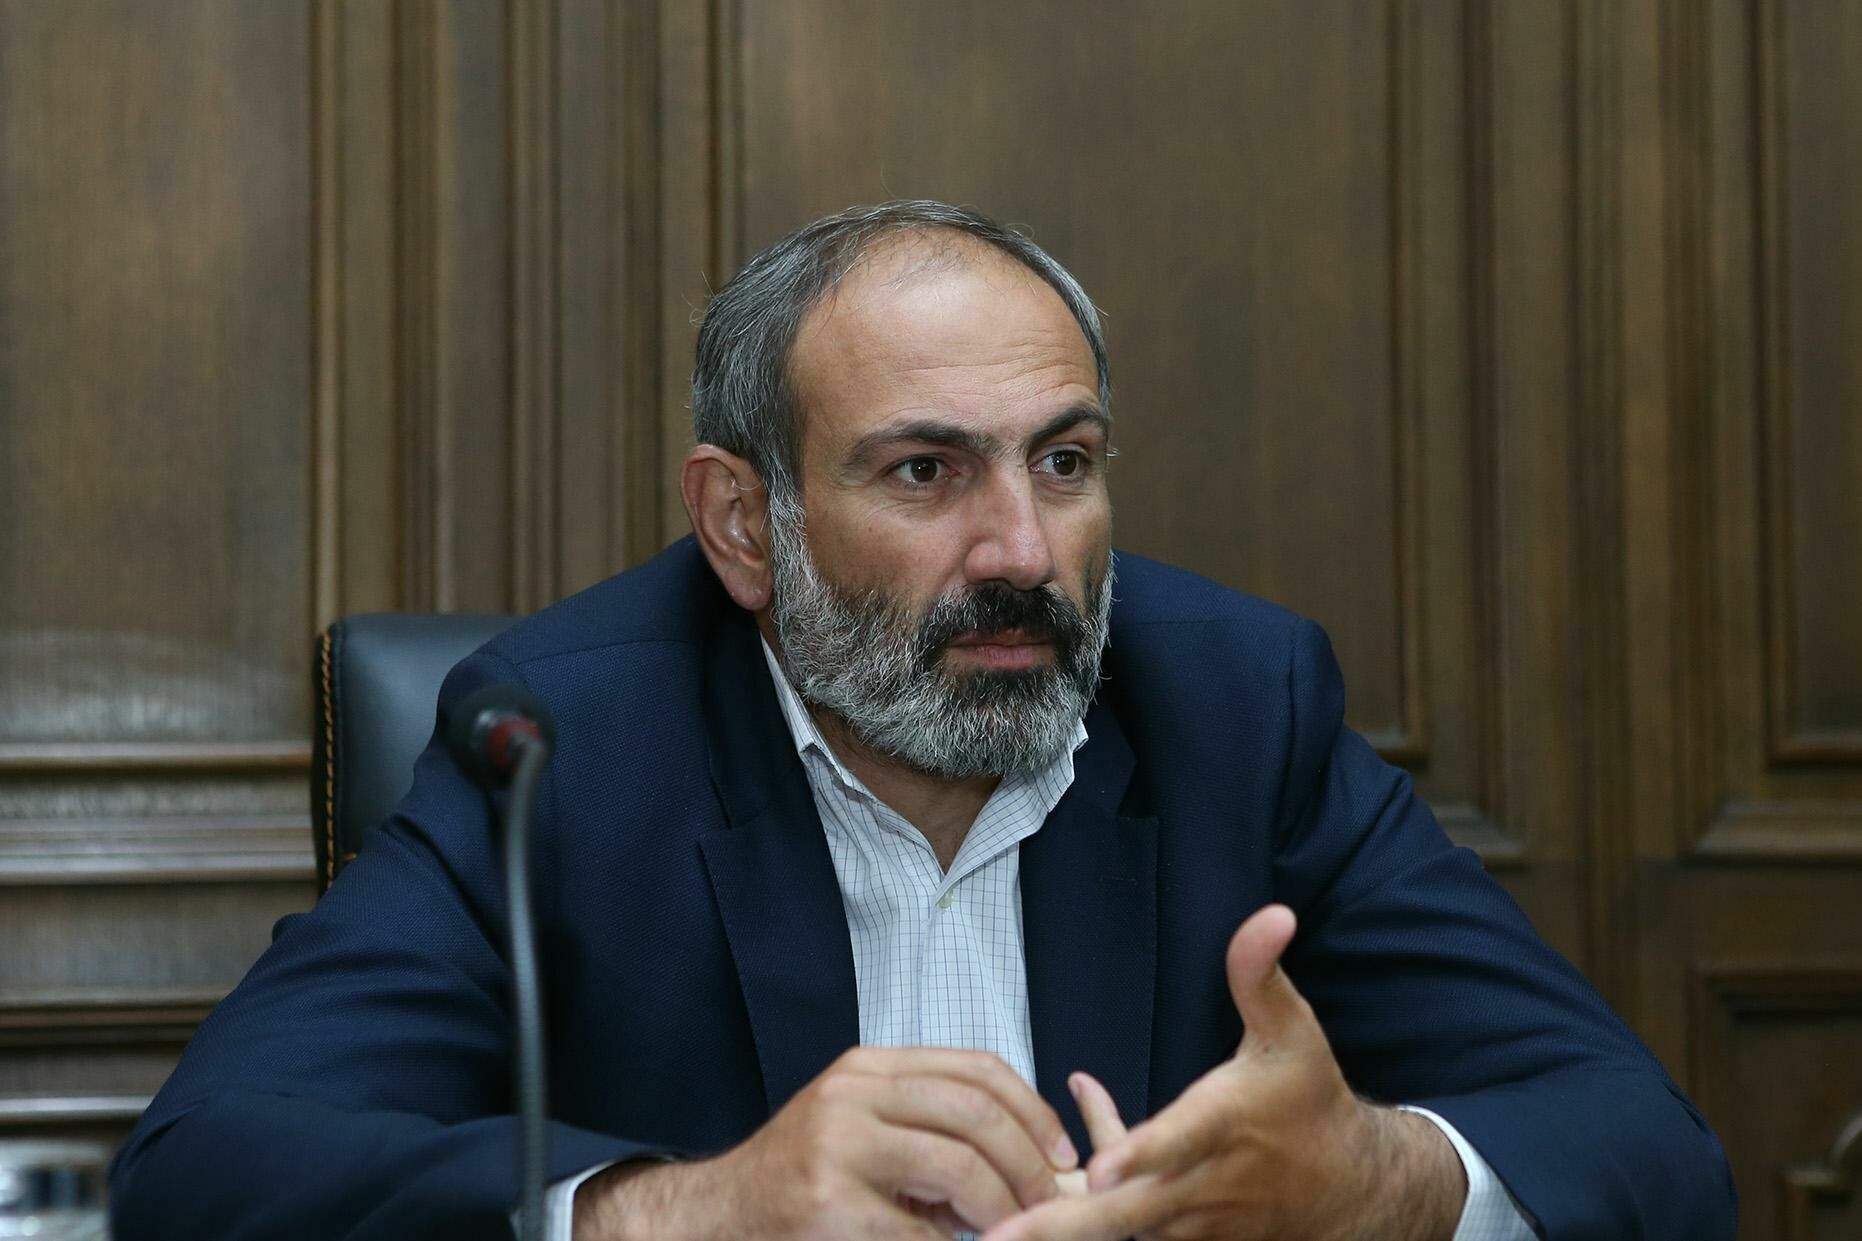 Пашинян объяснил соглашение по Карабаху: 20 тысячам военных грозило бы окружение